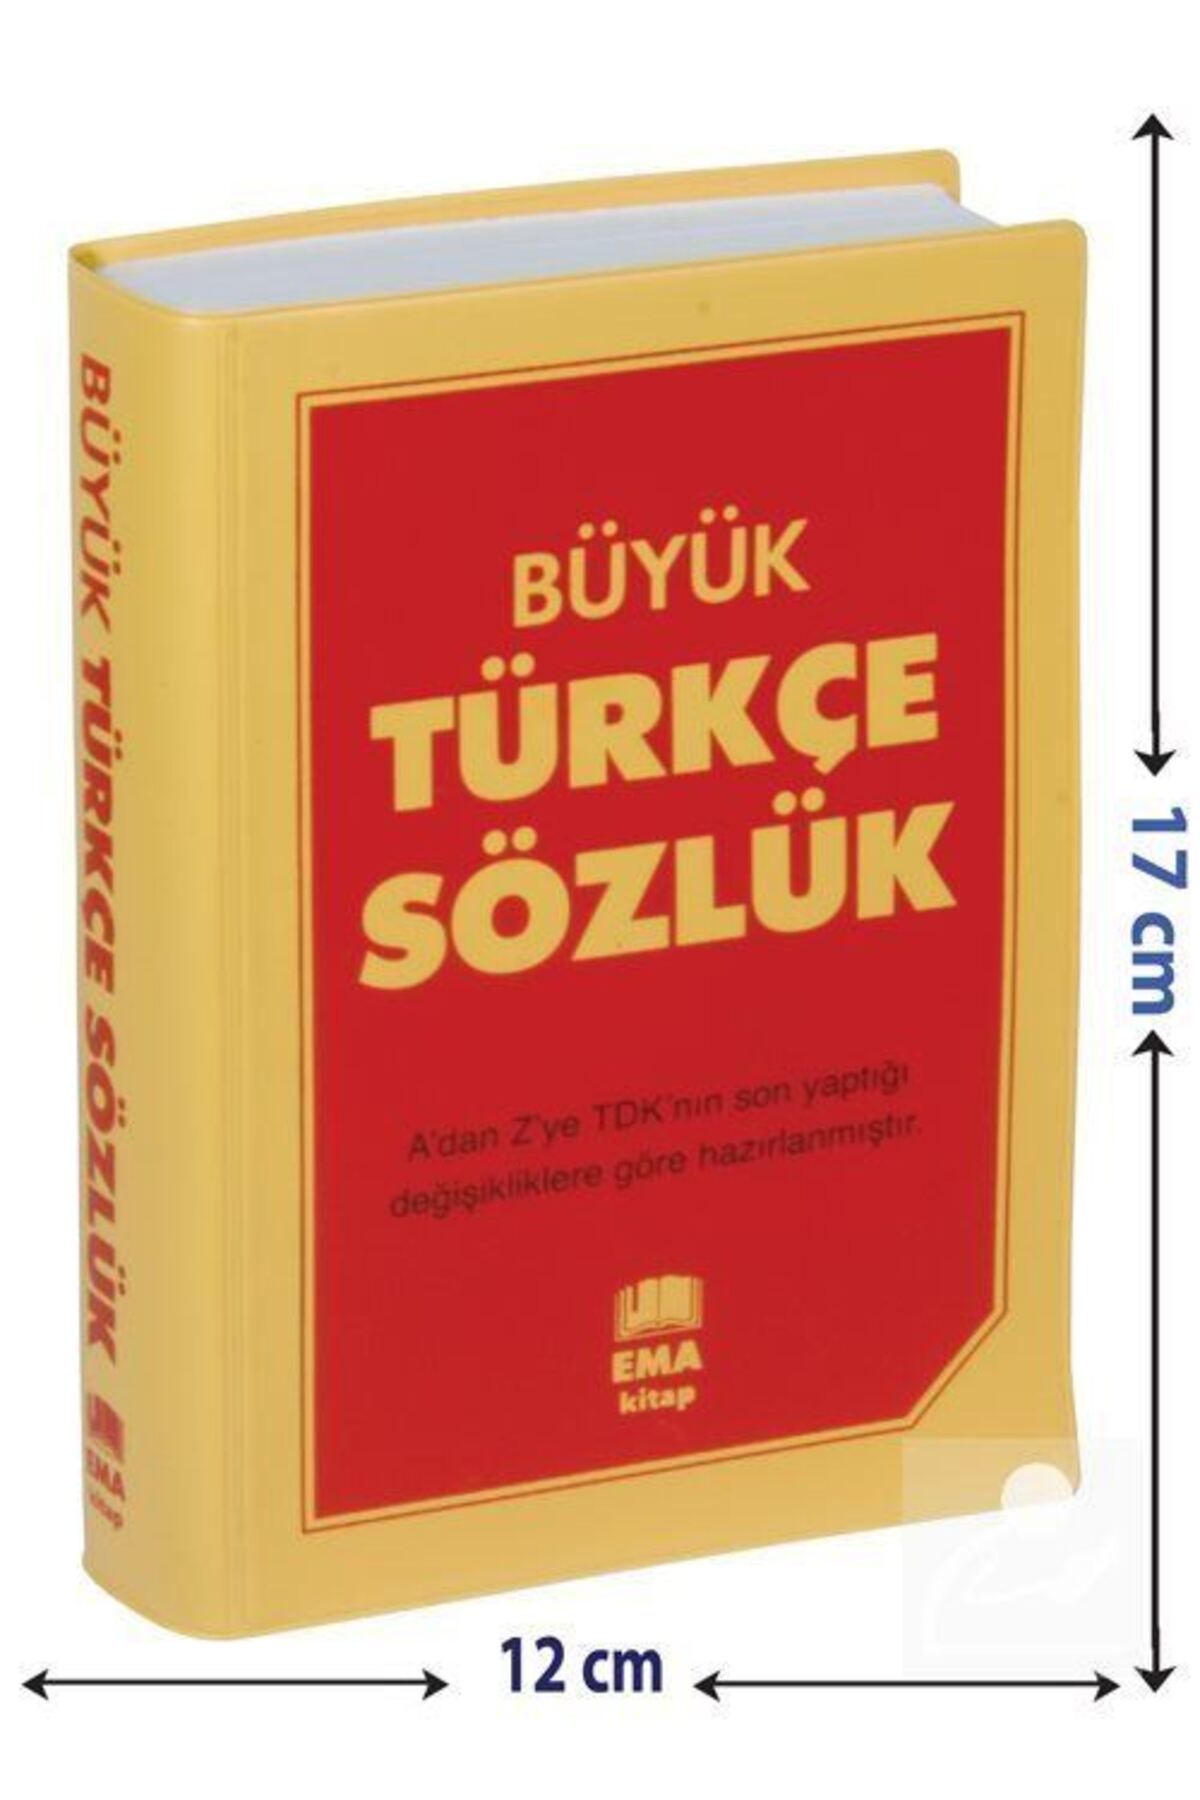 Ema Kitap Büyük Türkçe Sözlük A'dan Z'ye Tdk Uyumlu (LİSE VE DENGİ OKULLAR İÇİN)